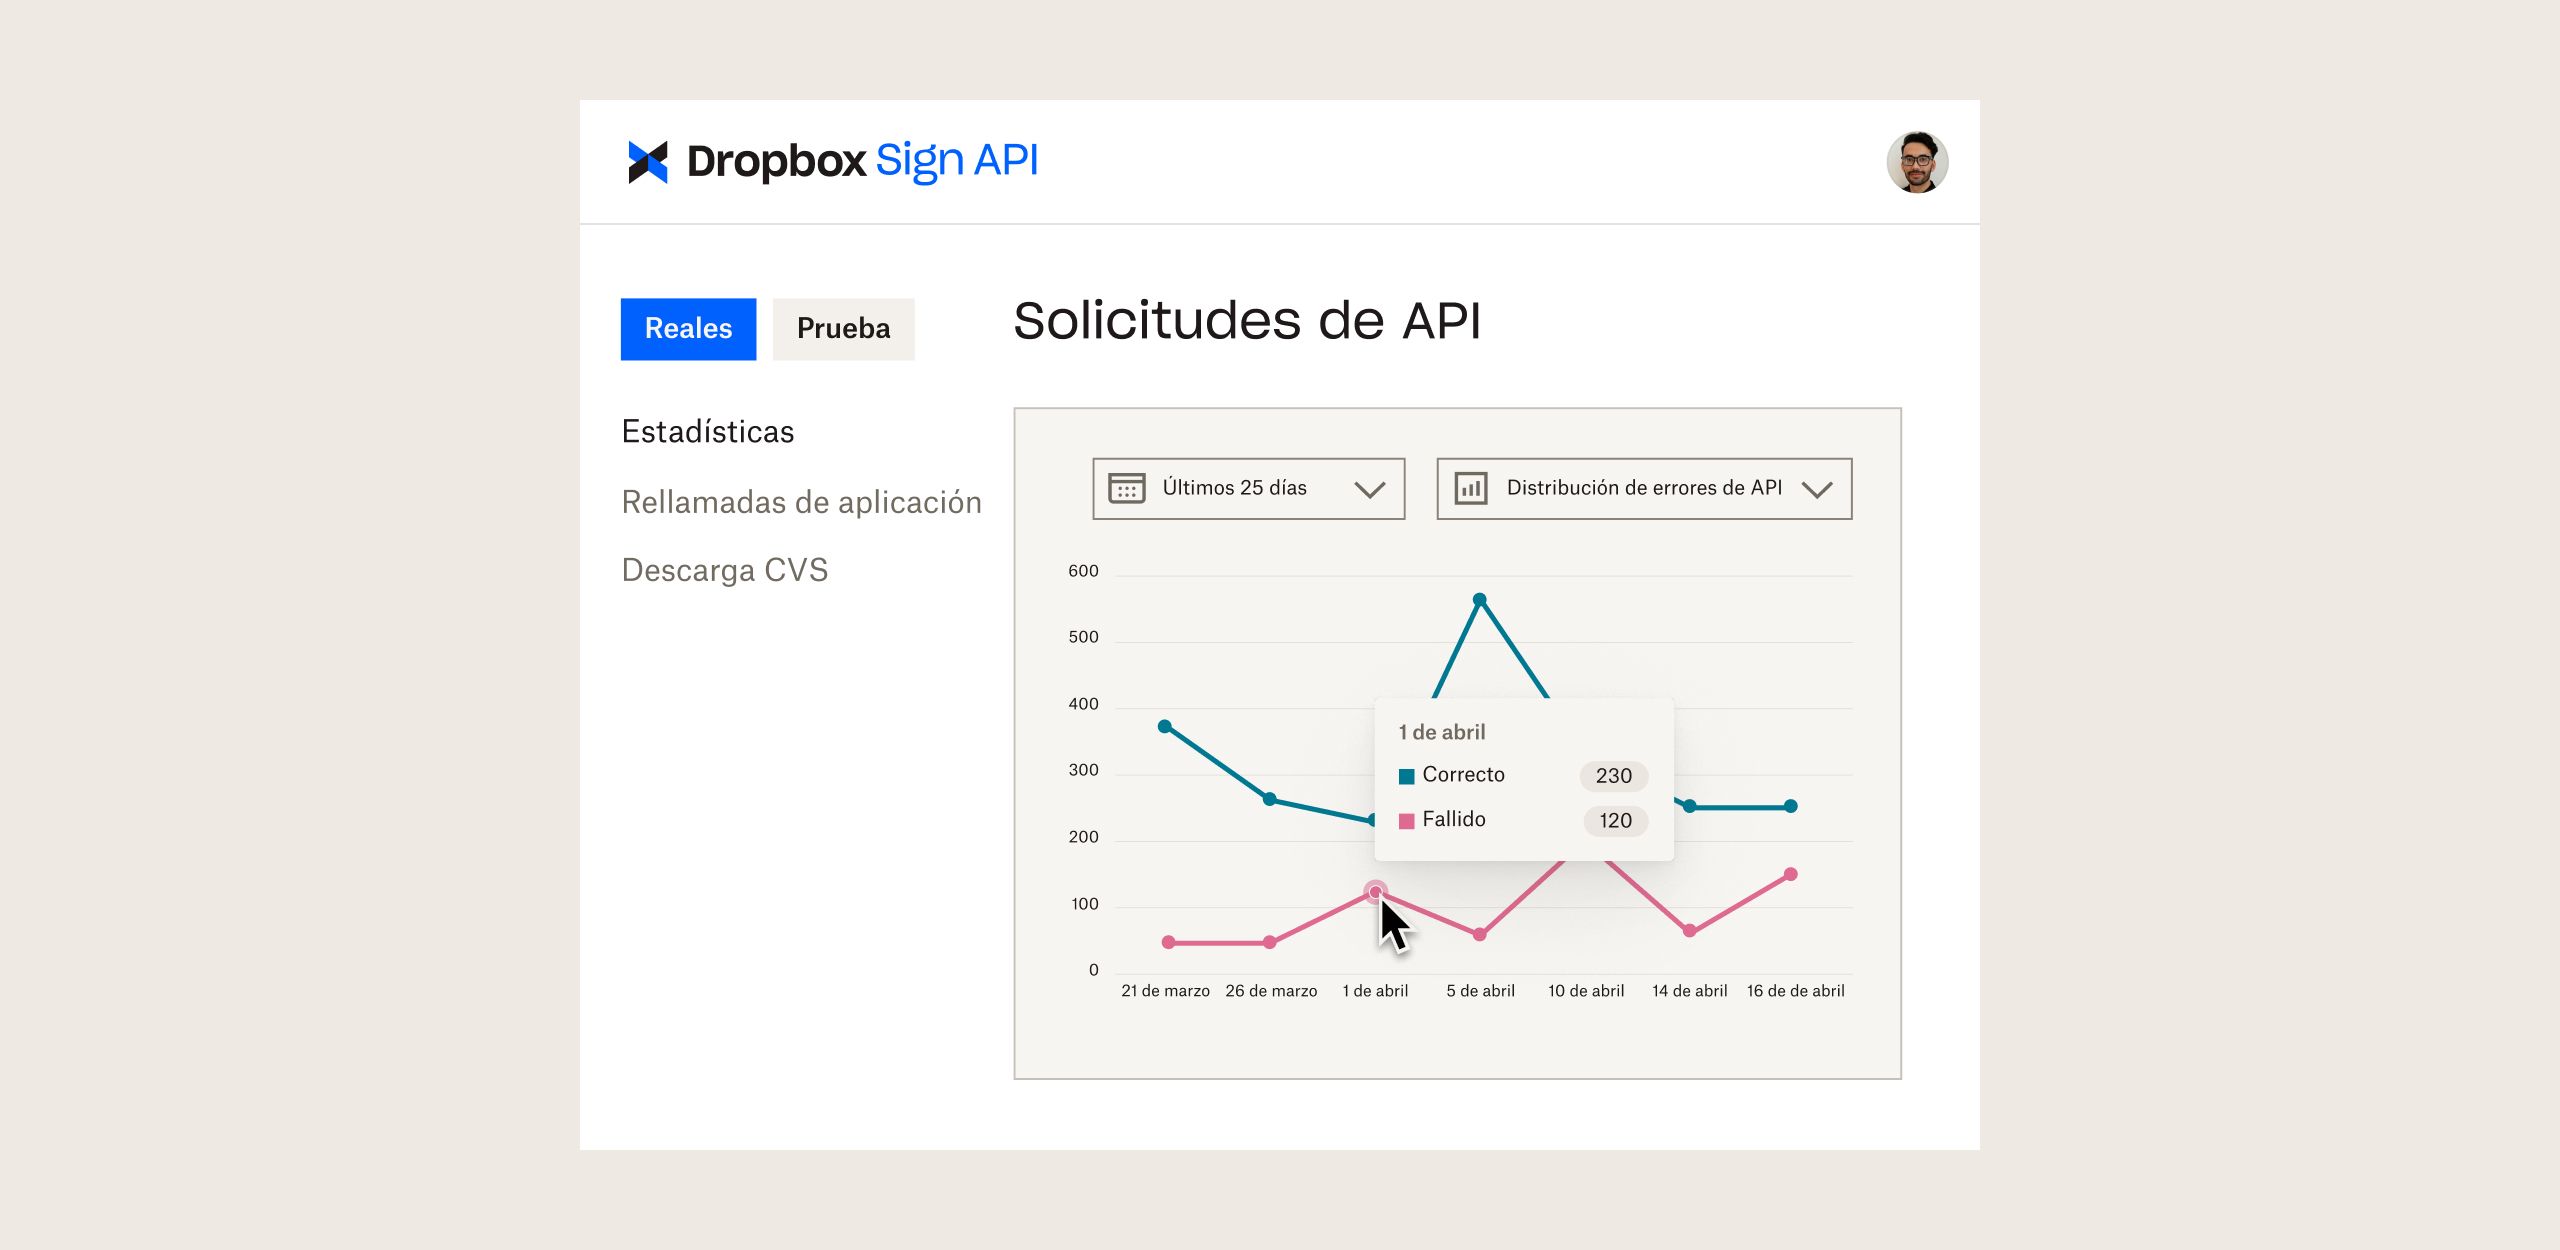 Panel de Dropbox Sign API con gráficos en los que se muestran las solicitudes de API a lo largo del tiempo